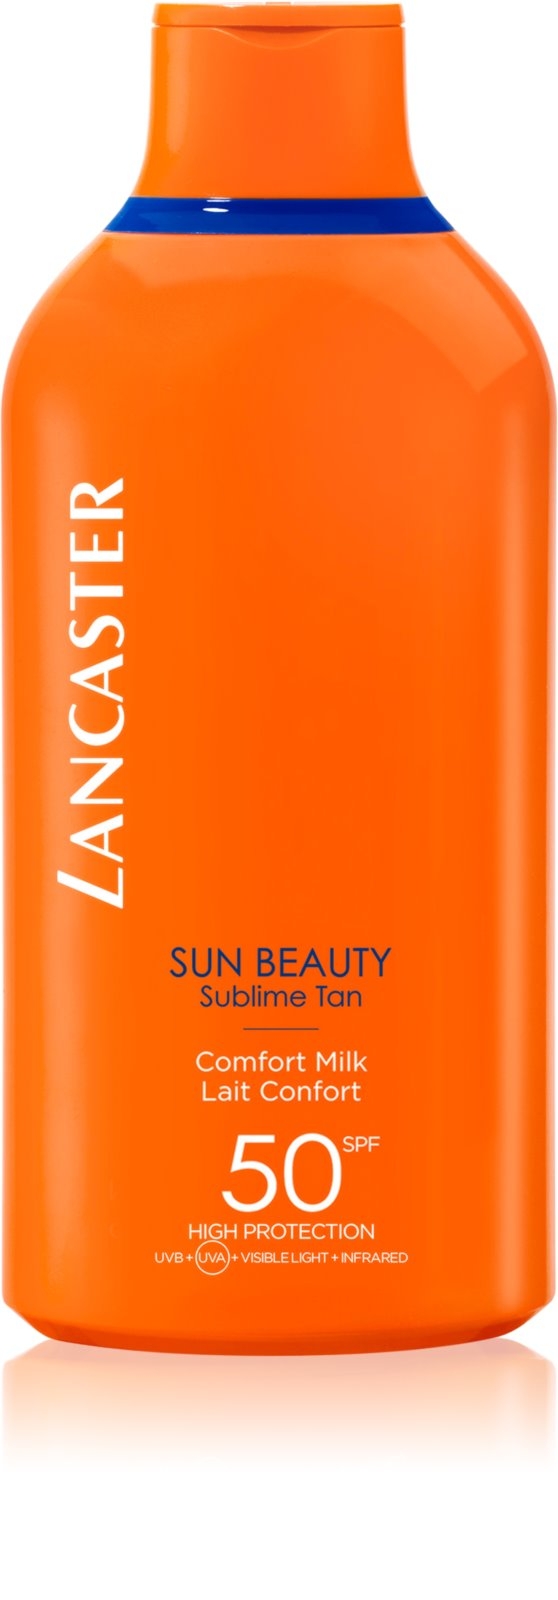 wijn Leger Vervreemden Lancaster SPF 50 Sun Beauty Comfort Milk 400 ml kopen?